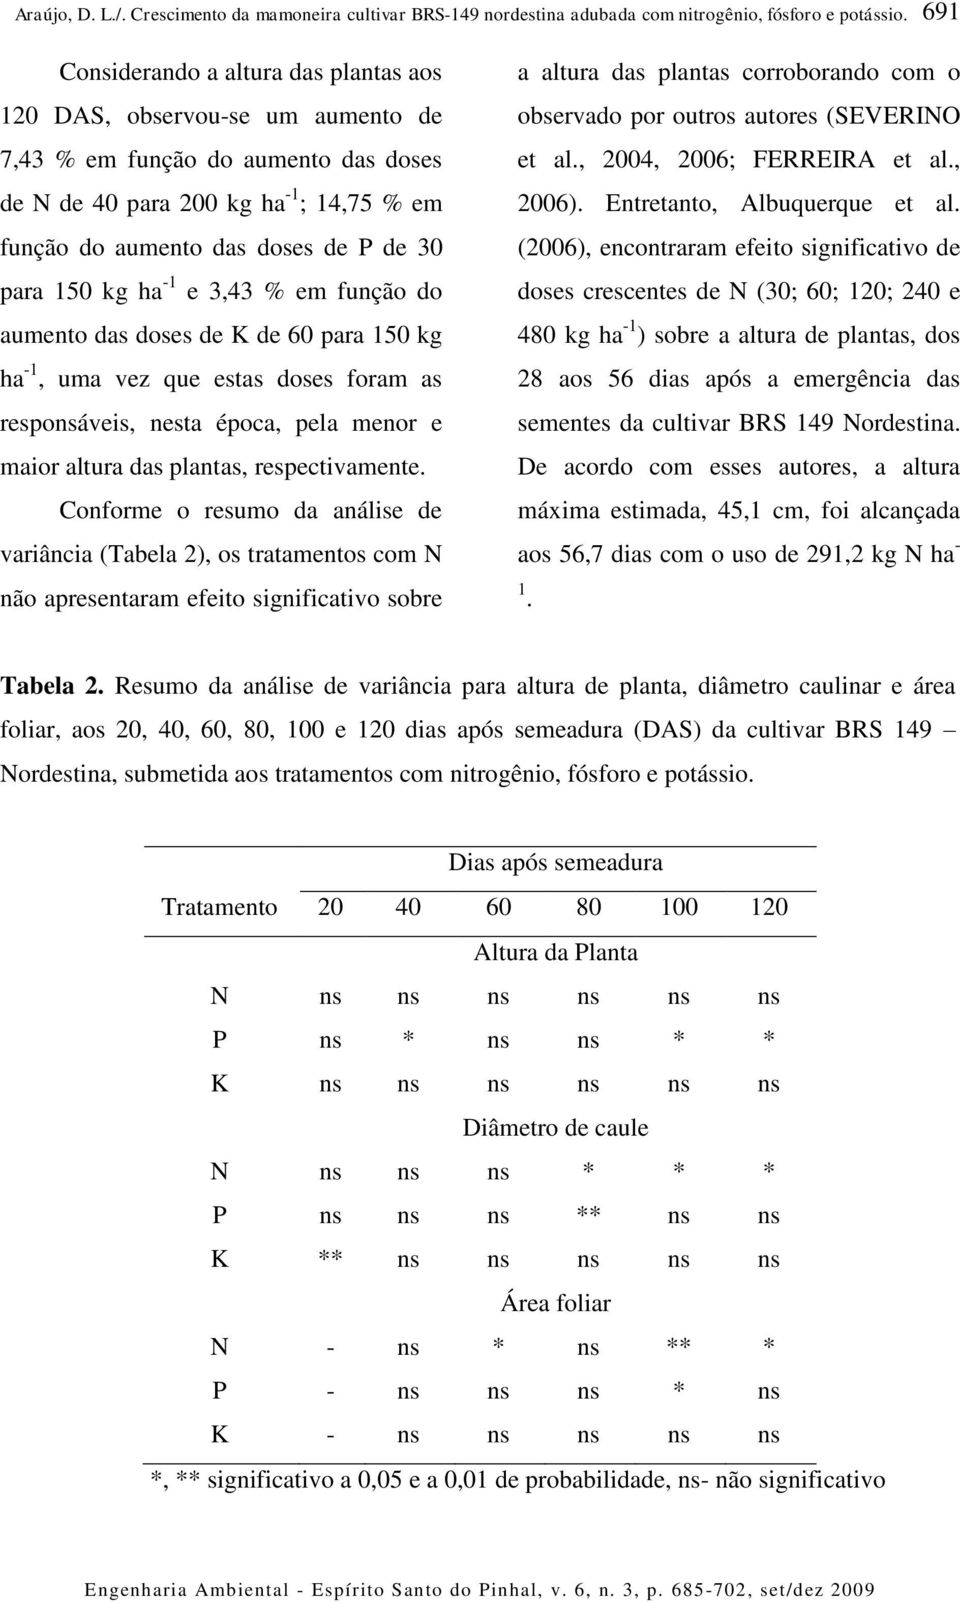 Conforme o resumo da análise de variância (Tabela 2), os tratamentos com N não apresentaram efeito significativo sobre a altura das plantas corroborando com o observado por outros autores (SEVERINO